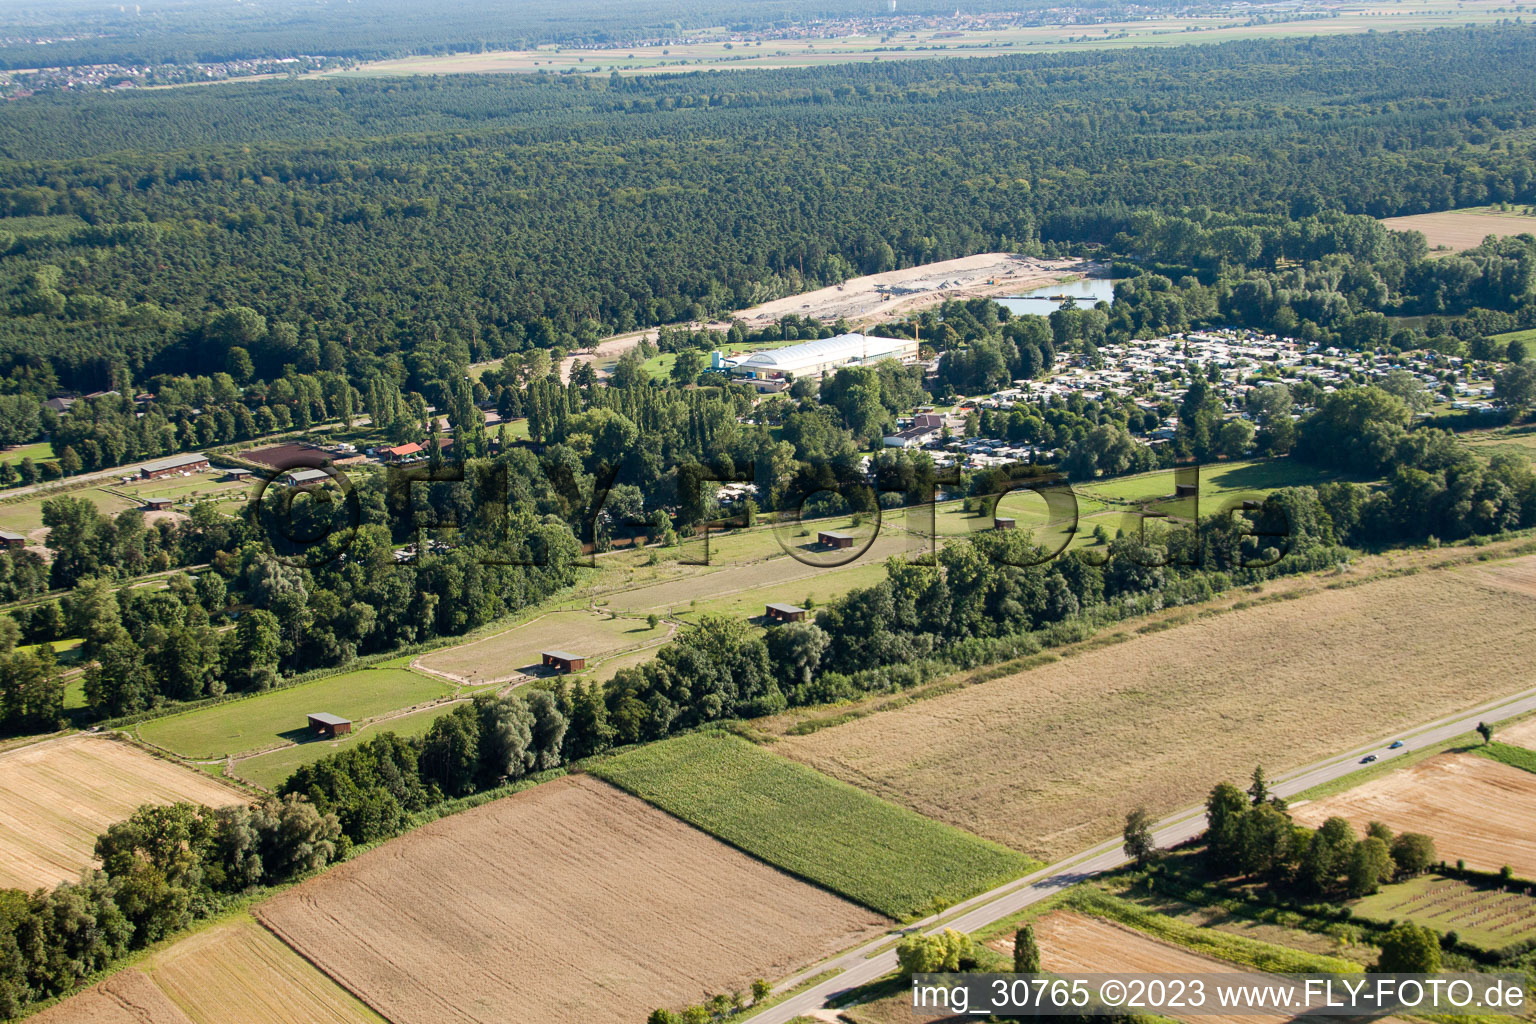 Photographie aérienne de Ferme d'autruches de Mhou à Rülzheim dans le département Rhénanie-Palatinat, Allemagne